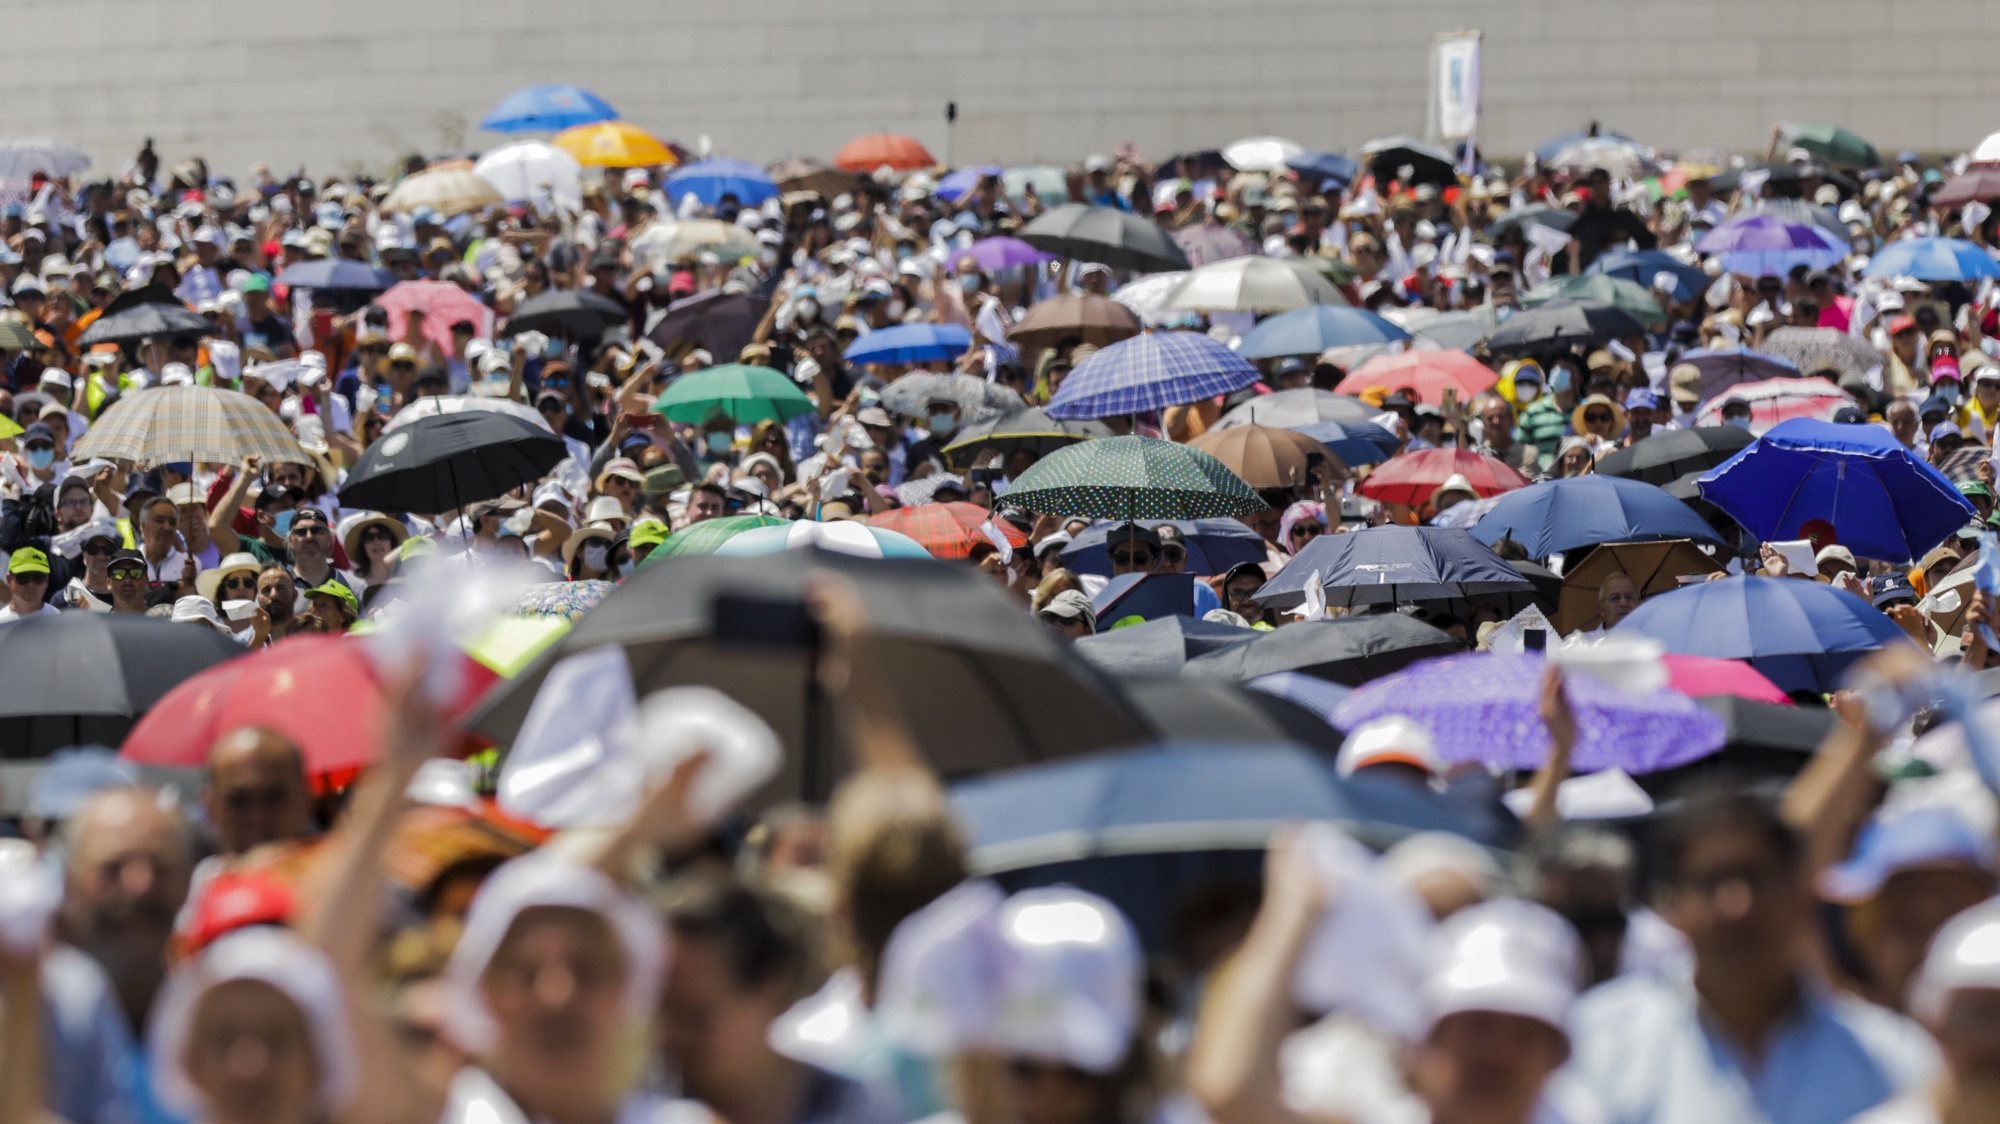 Peregrinos participam na Procissão do Adeus durante as celebrações religiosas da Peregrinação Internacional Aniversária de maio no Santuário de Fátima, 13 de maio de 2022. PAULO CUNHA/LUSA